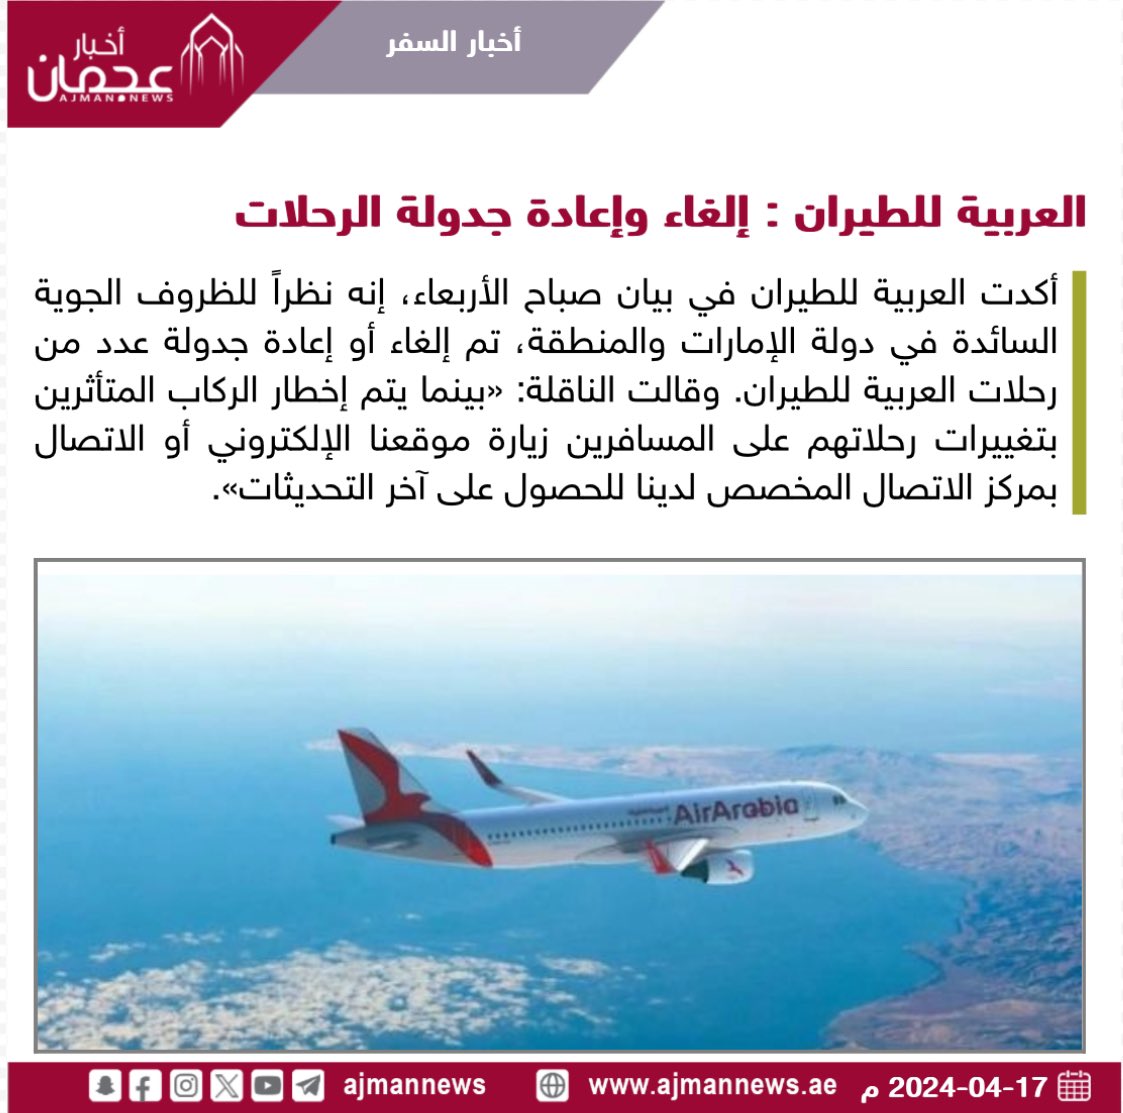 العربية للطيران : إلغاء وإعادة جدولة الرحلات ajmannews.ae/120974 #أخبار_السفر  #سياحة  #سفر  #أخبار #العربية_للطيران